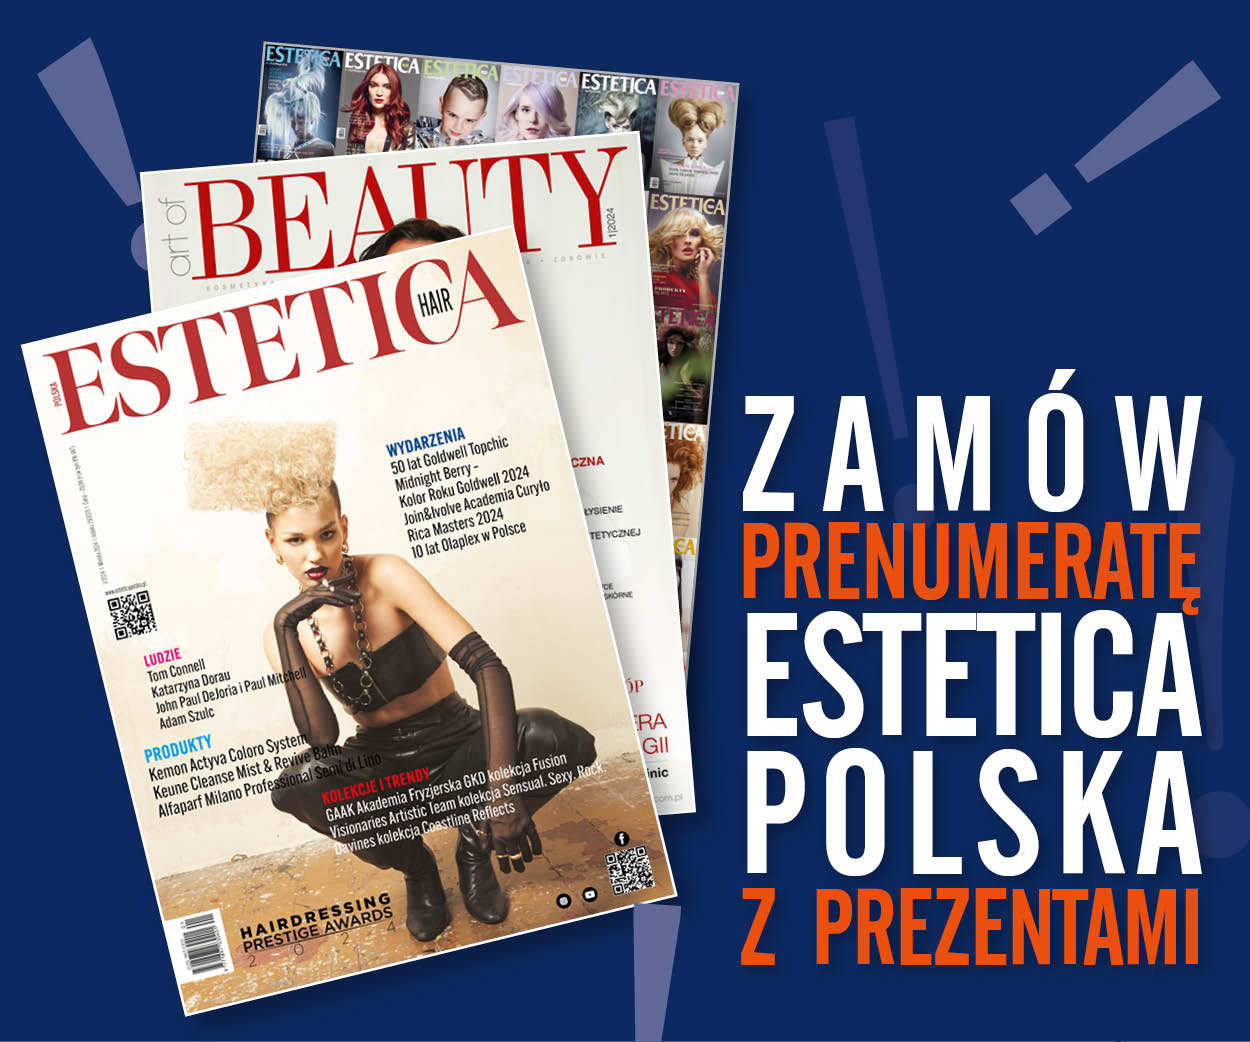 Zamów prenumeratę Estetica Polska z prezentami